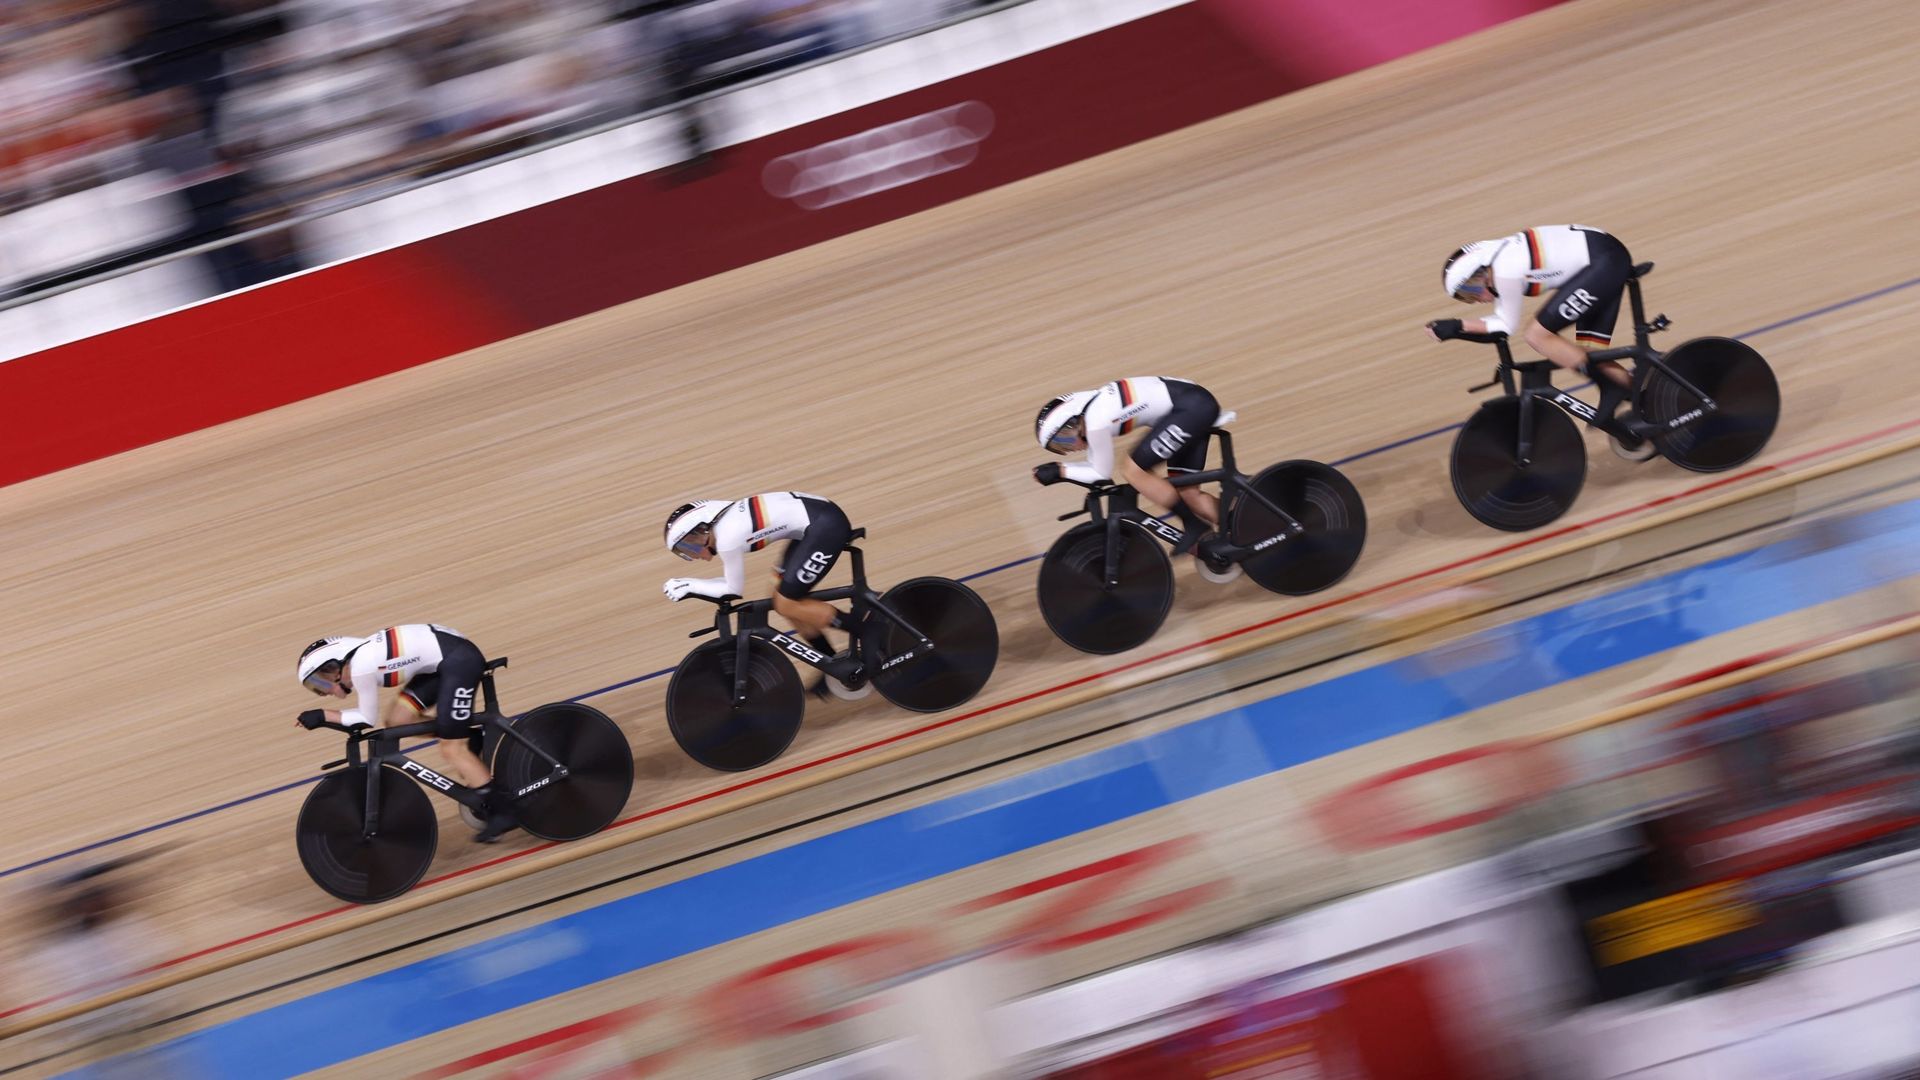 L’Allemagne a remporté le titre olympique en poursuite par équipe dames en cyclisme sur piste mardi aux Jeux Olympiques de Tokyo en battant en finale la Grande Bretagne.